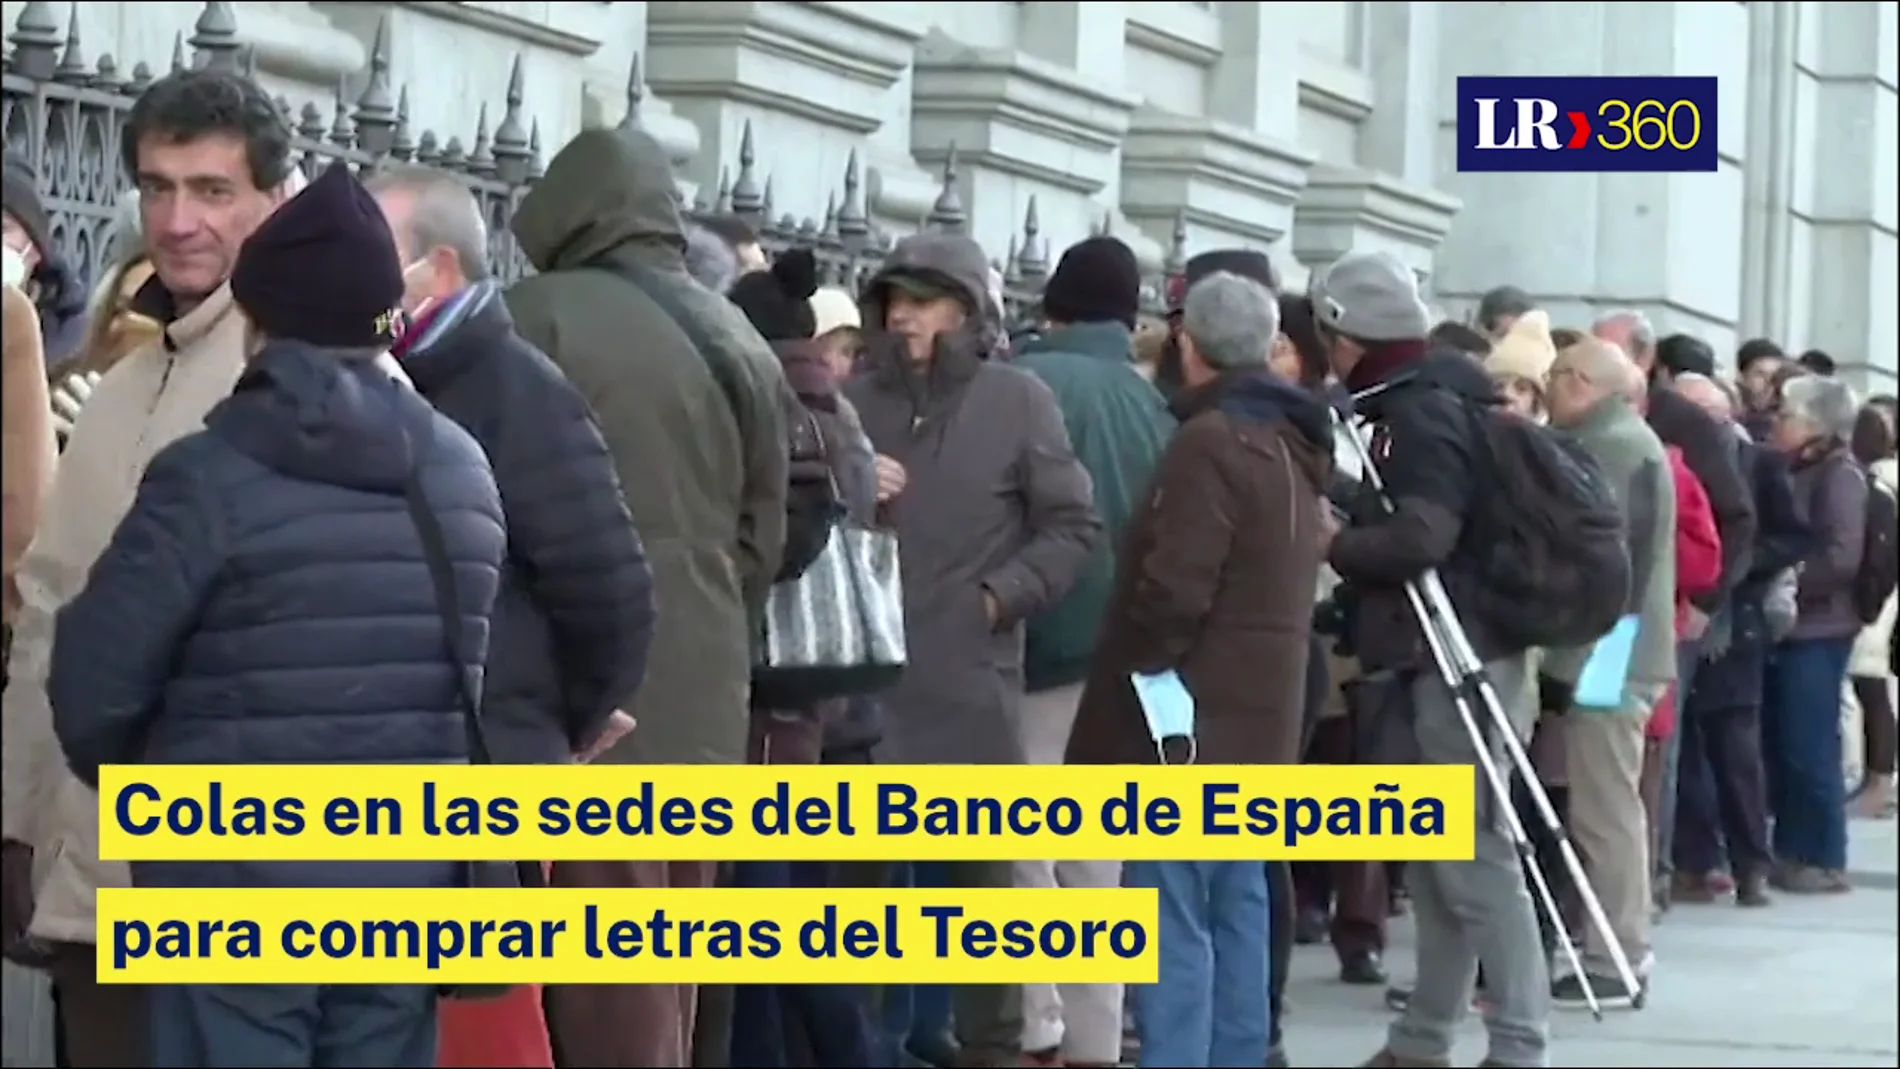 Colas en las sedes del Banco de España para comprar letras del Tesoro